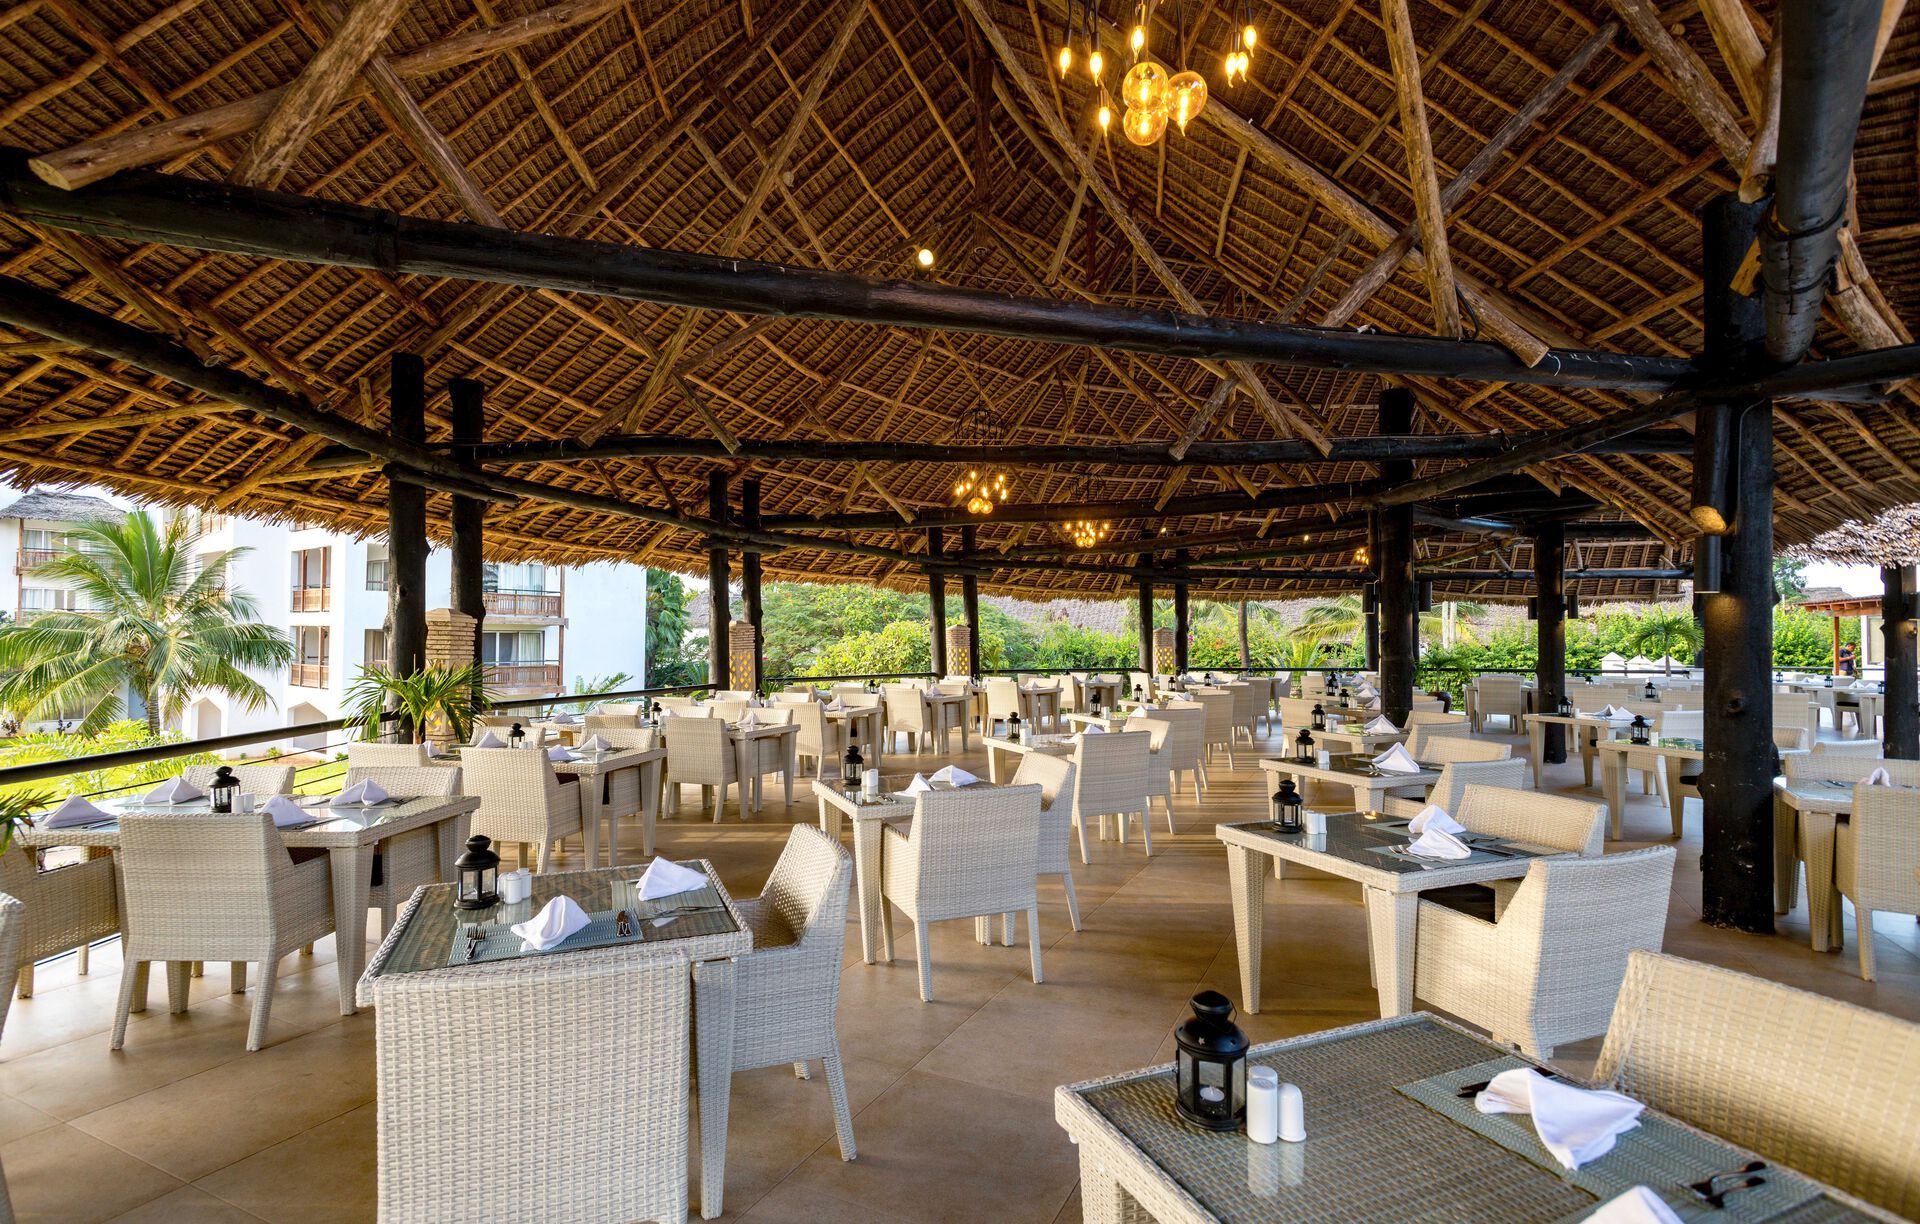 Tanzanie - Zanzibar - Hôtel The Royal Zanzibar Beach Resort 5*